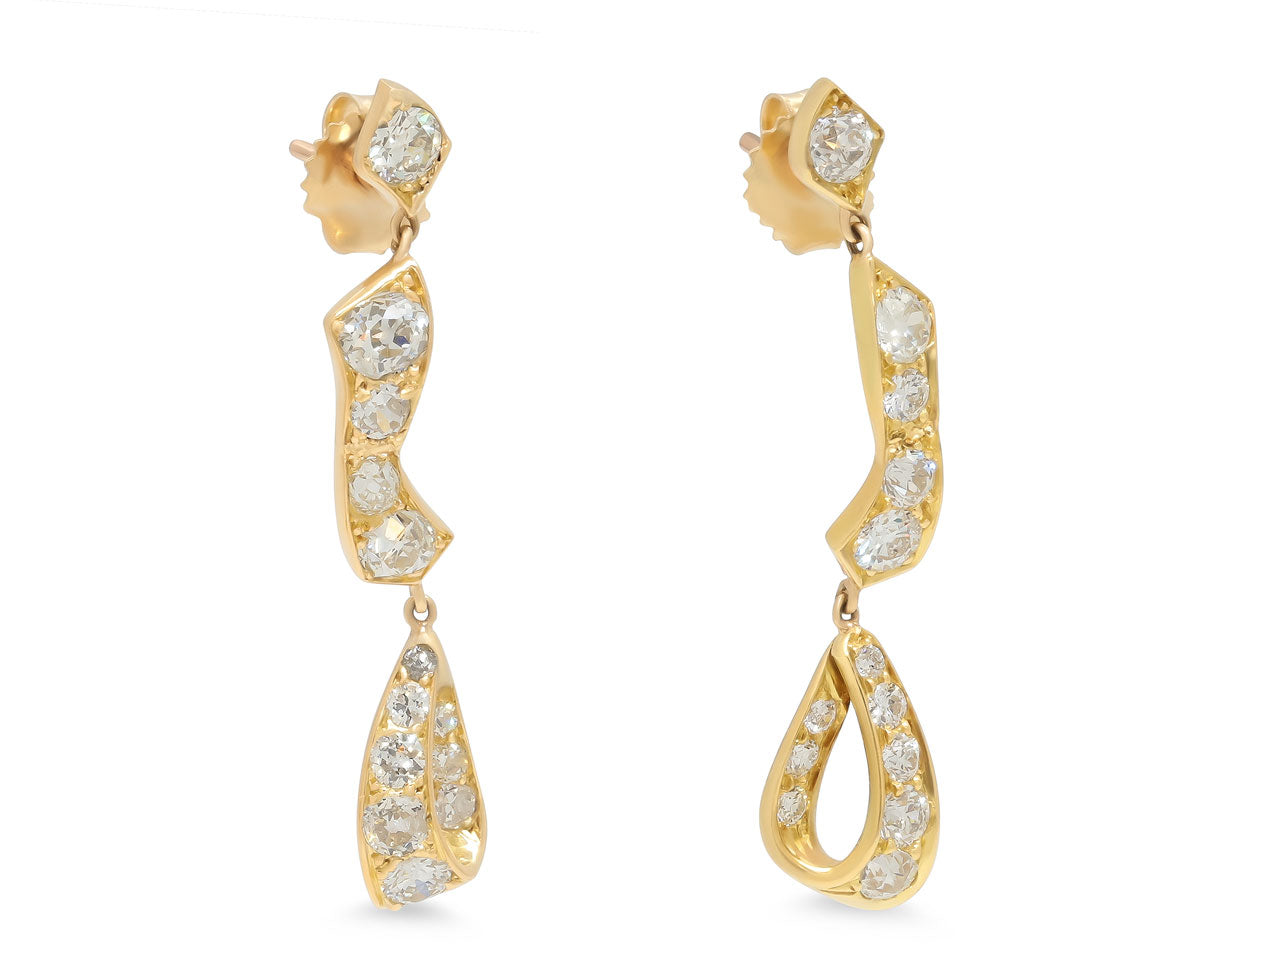 Beladora 'Bespoke' Diamond Earrings in 18K Gold